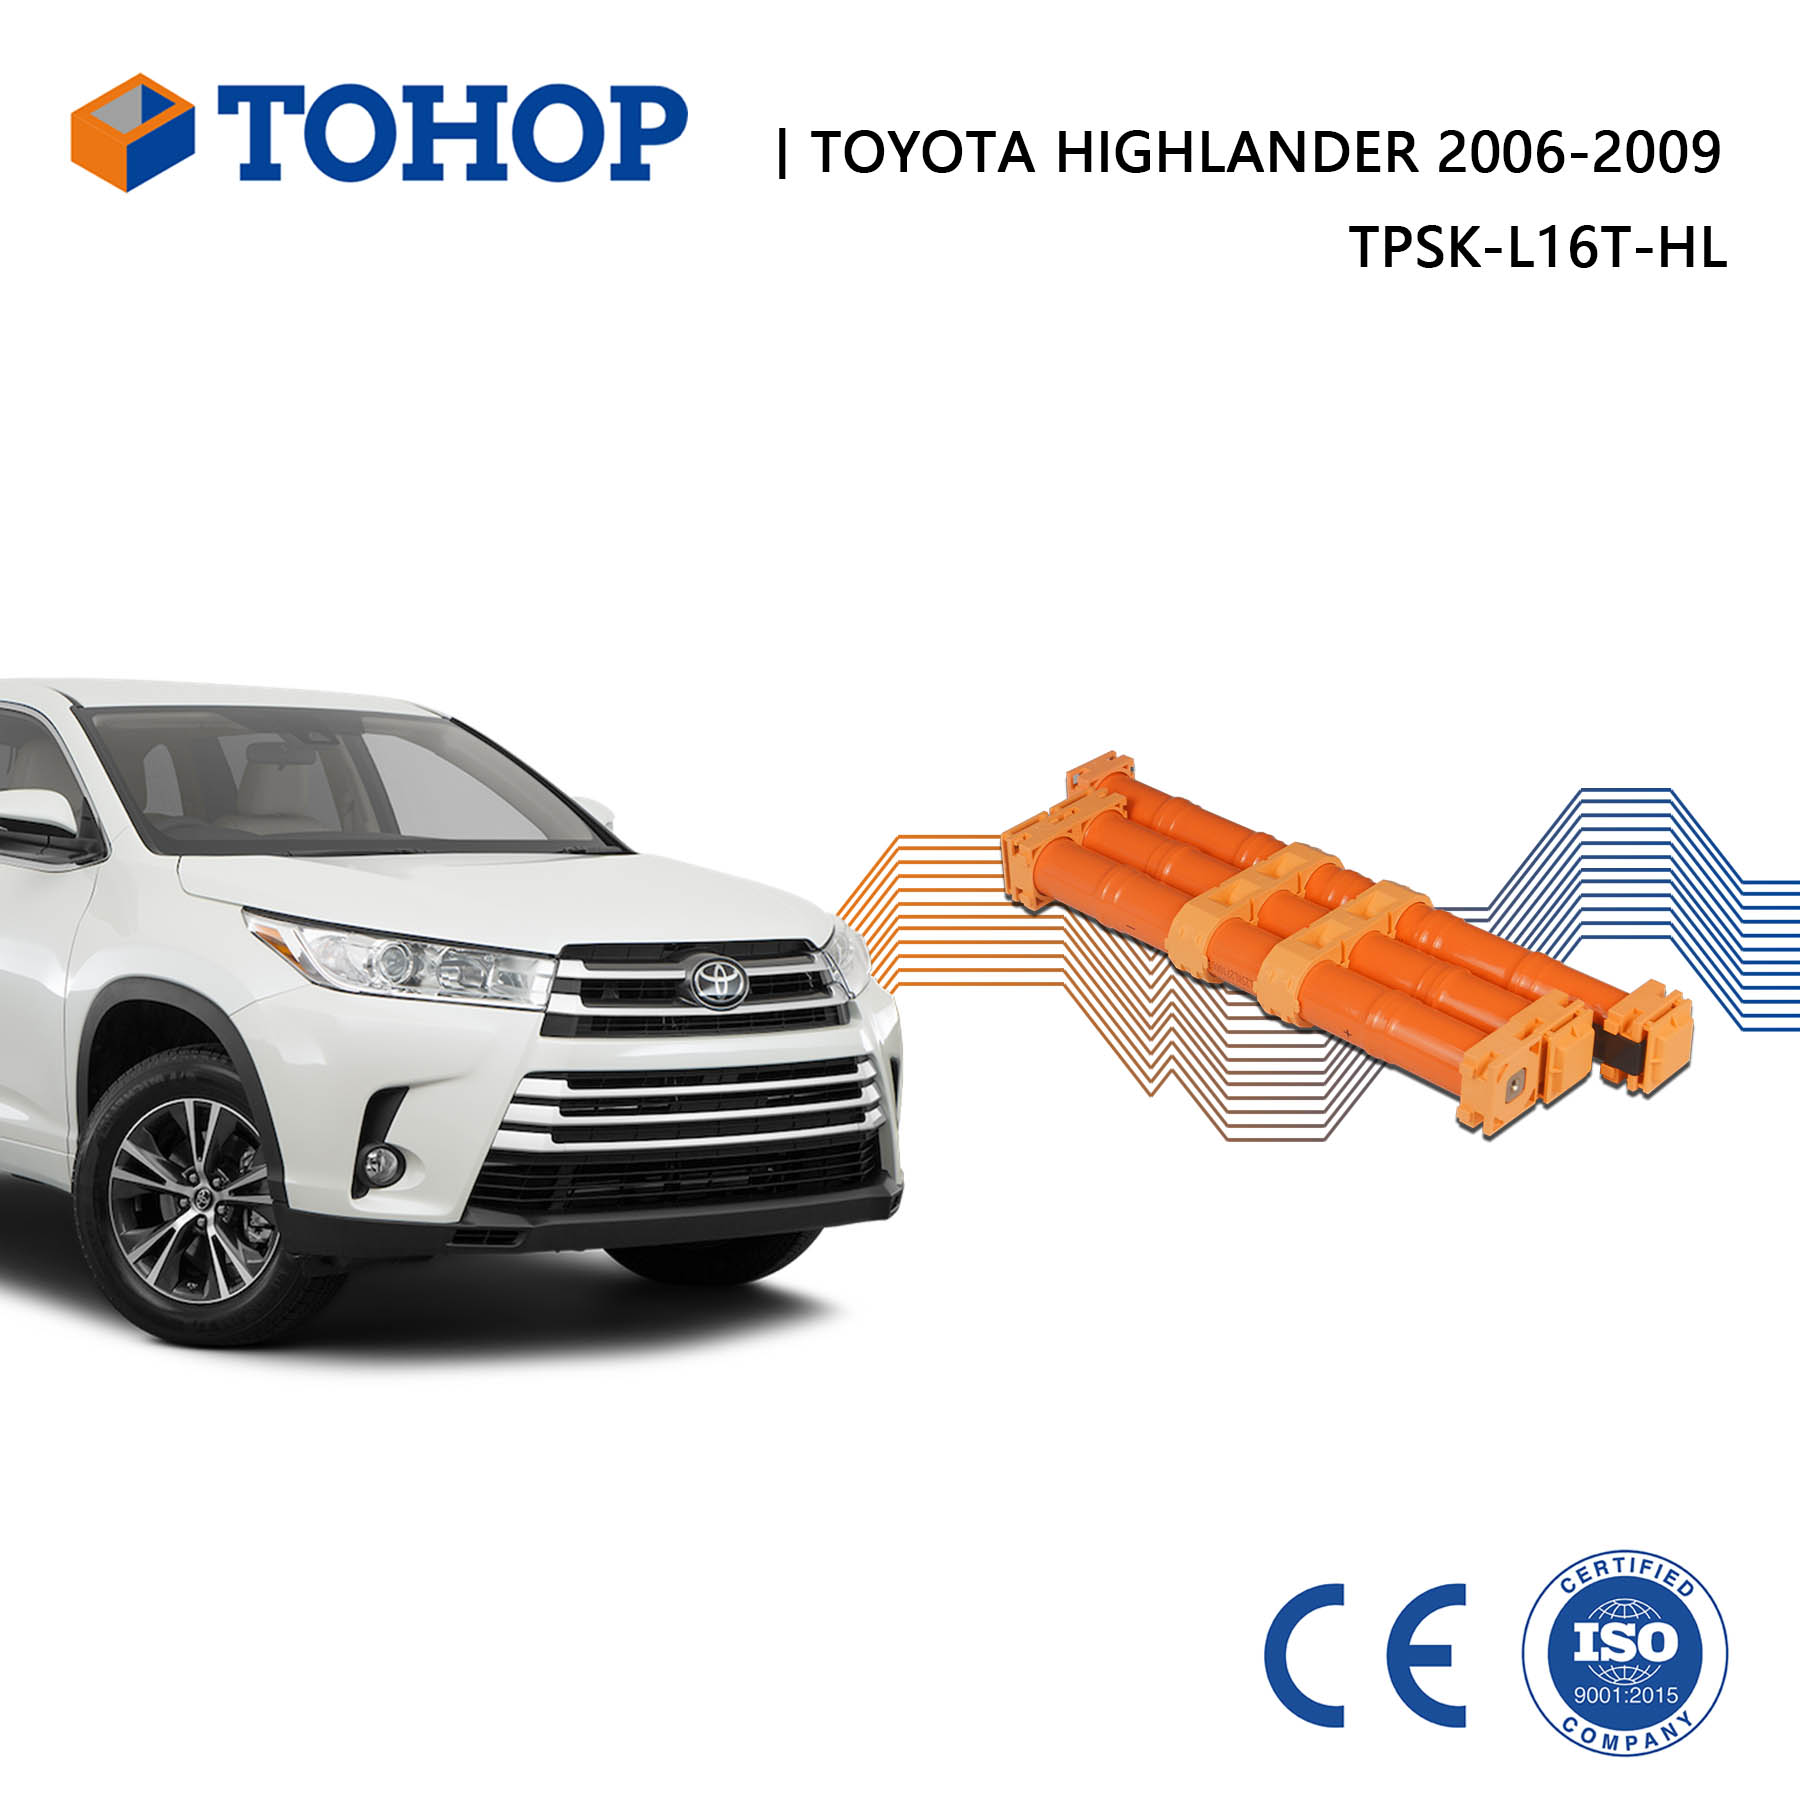 Paquete de batería de coche híbrido recargable Highlander 2009 de 19,2 V 6,5 Ah para Toyota